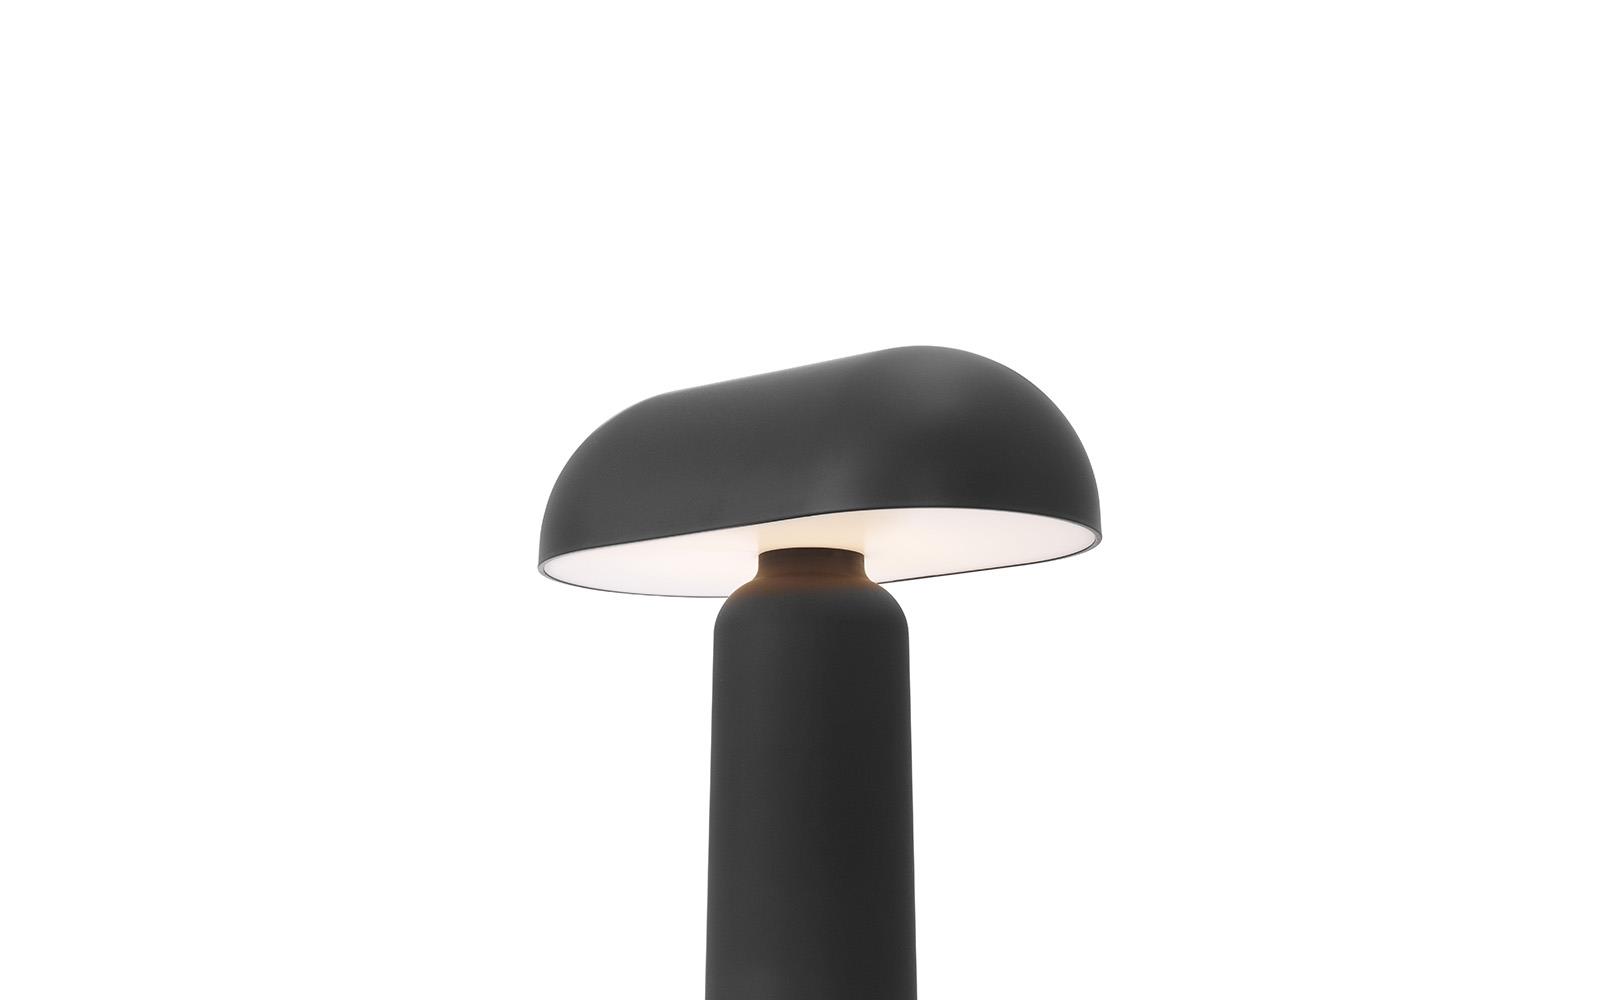 Porta Table Lamp4